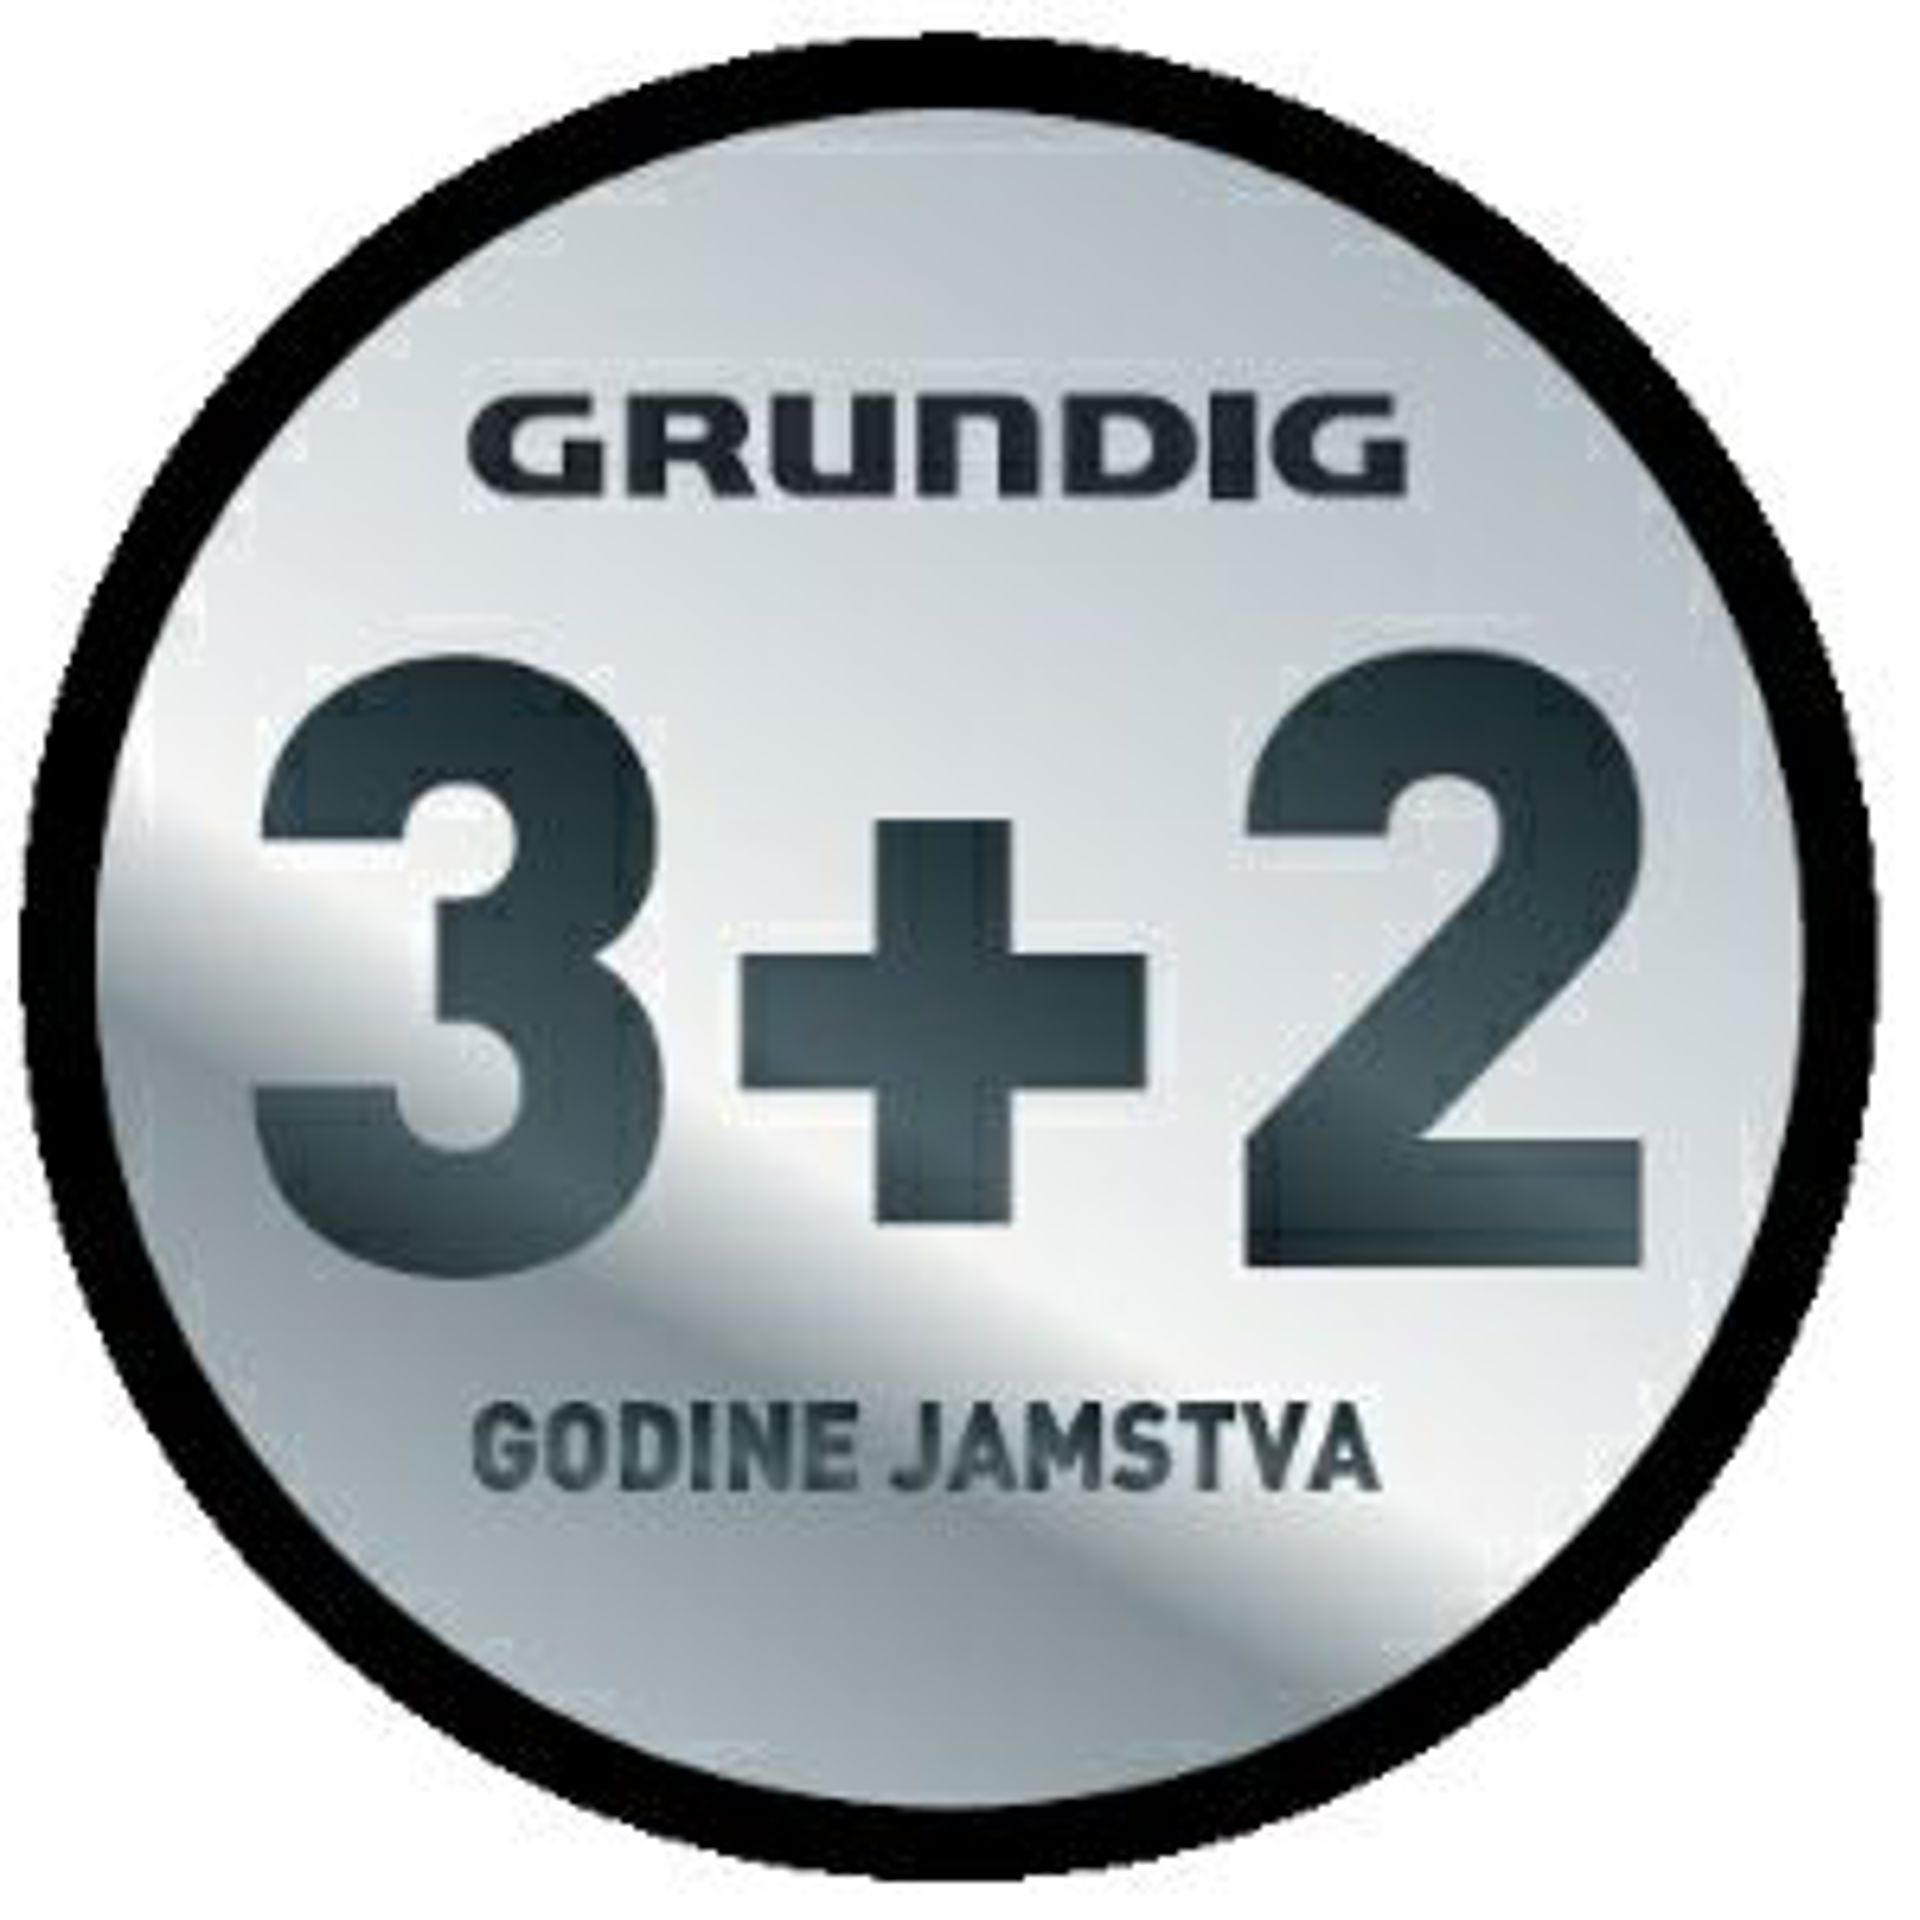 Besplatna dostava i 5 godina garancije za Grundig klima uređaje